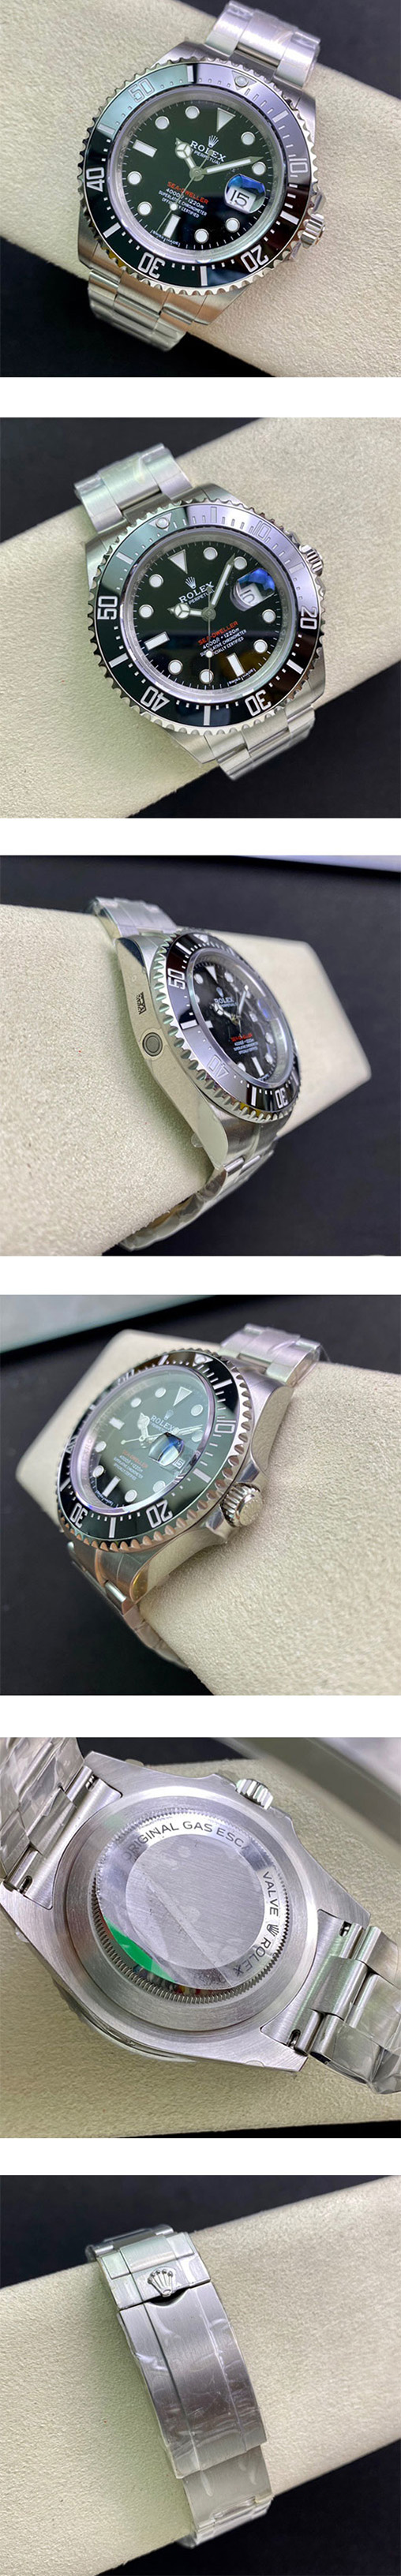 【43mm】シードゥエラー M126600-0001 メンズスーパーコピー腕時計 